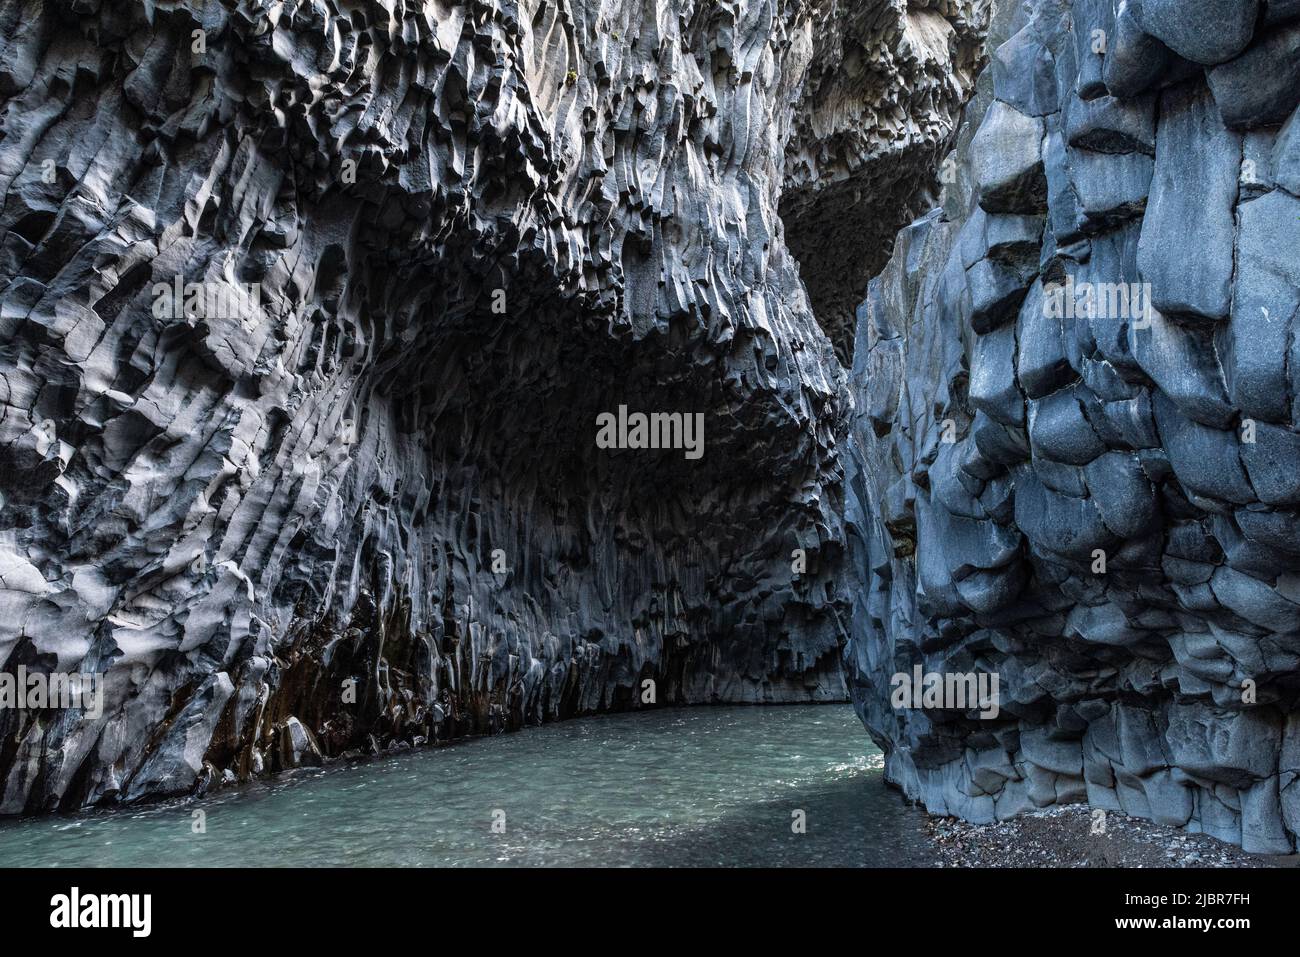 Dramatische vulkanische Basaltsteinformationen in der Gola dell'Alcantara, einer tiefen Flussschlucht in der Nähe des Ätna im Osten Siziliens, Italien. Stockfoto